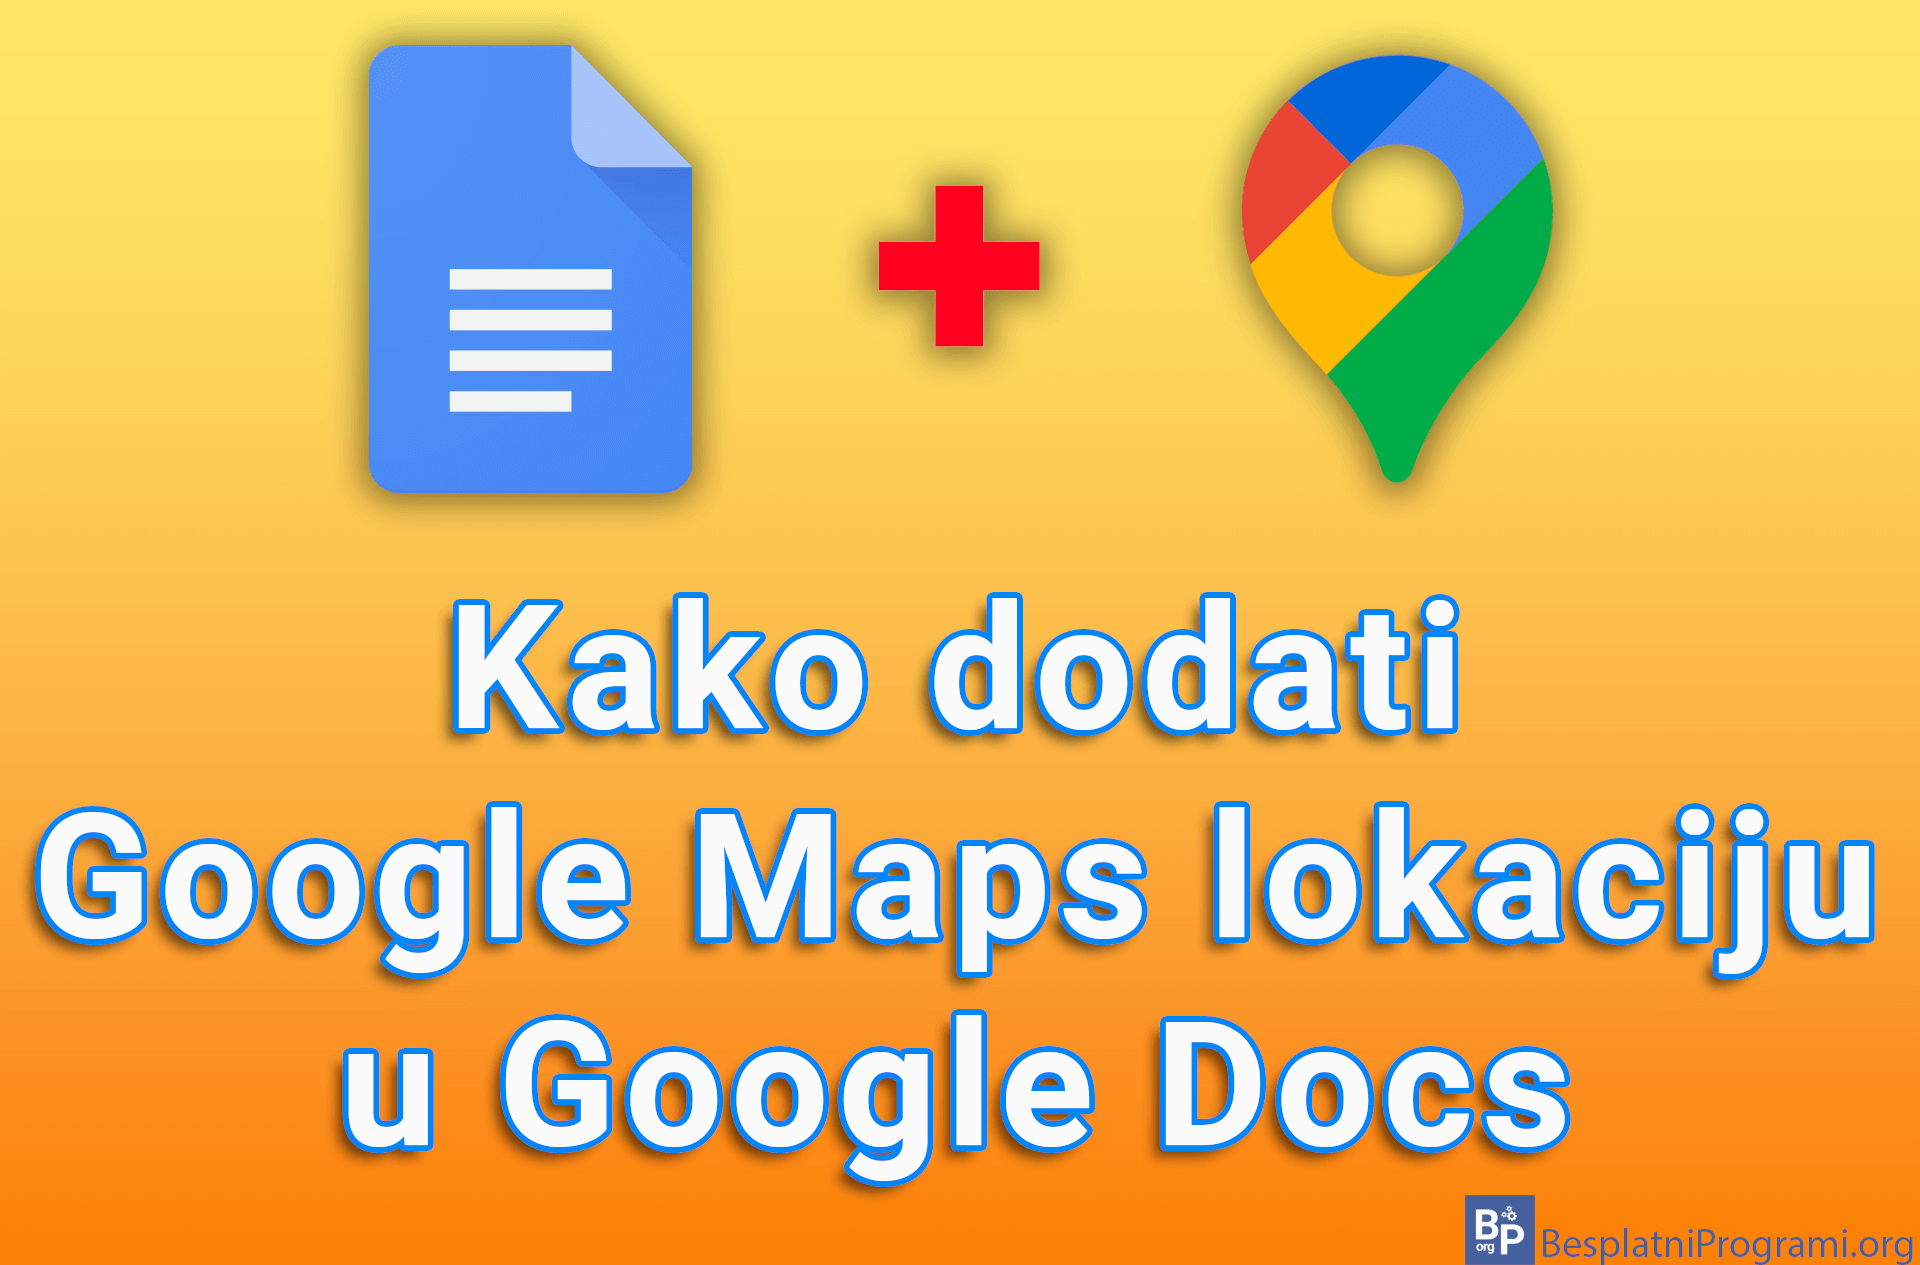 Kako dodati Google Maps lokaciju u Google Docs